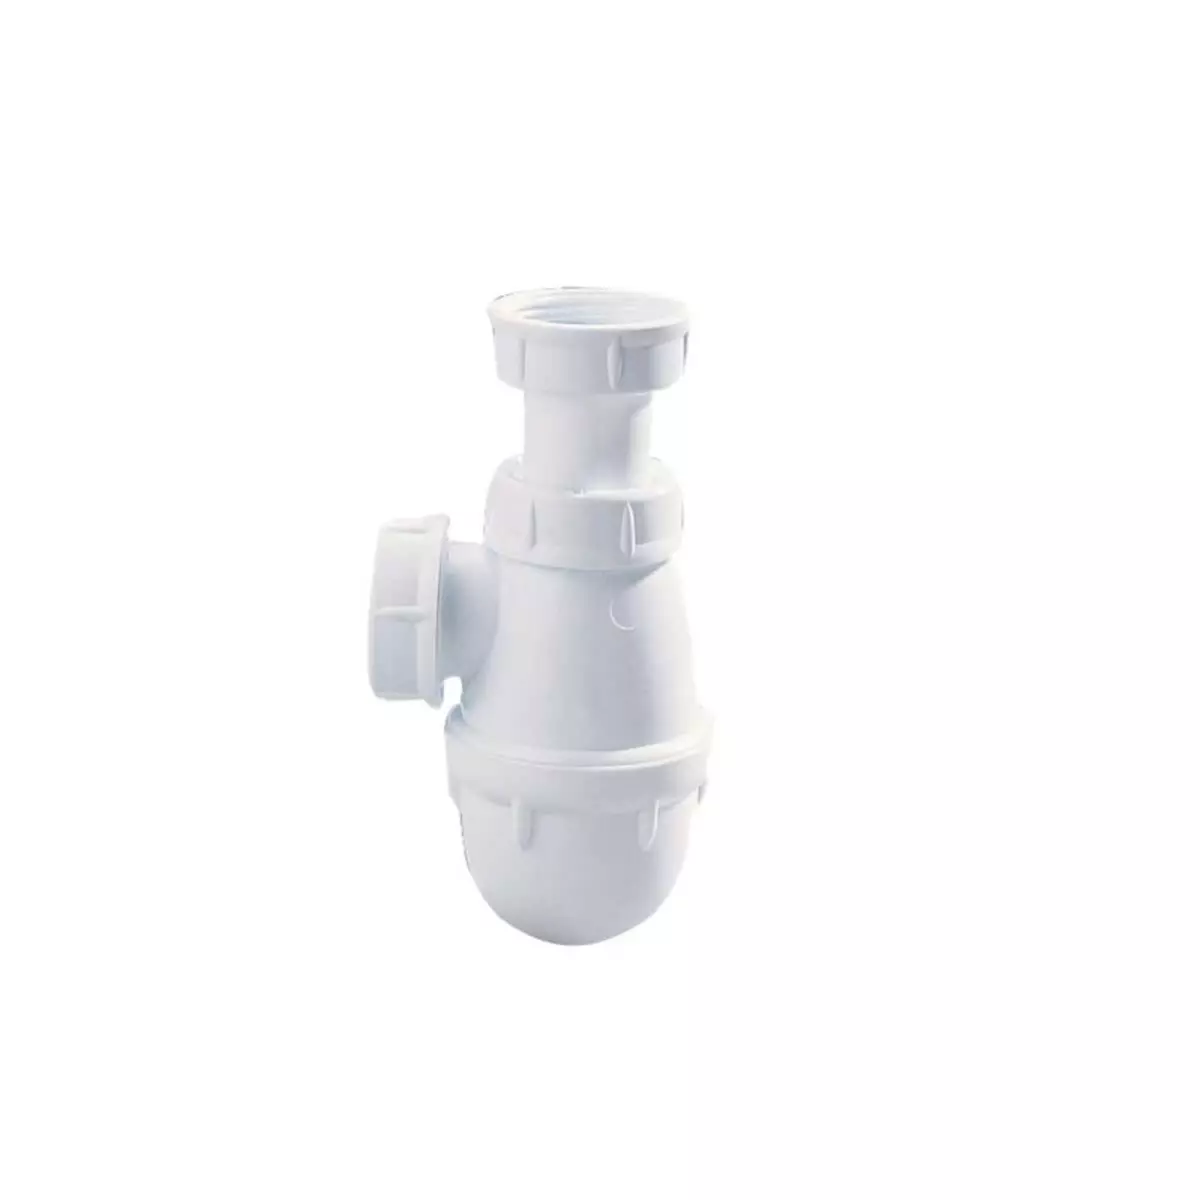  Siphon de lavabo NICOLL - sortie joint conique - Easyphon - 32mm - 00109 T